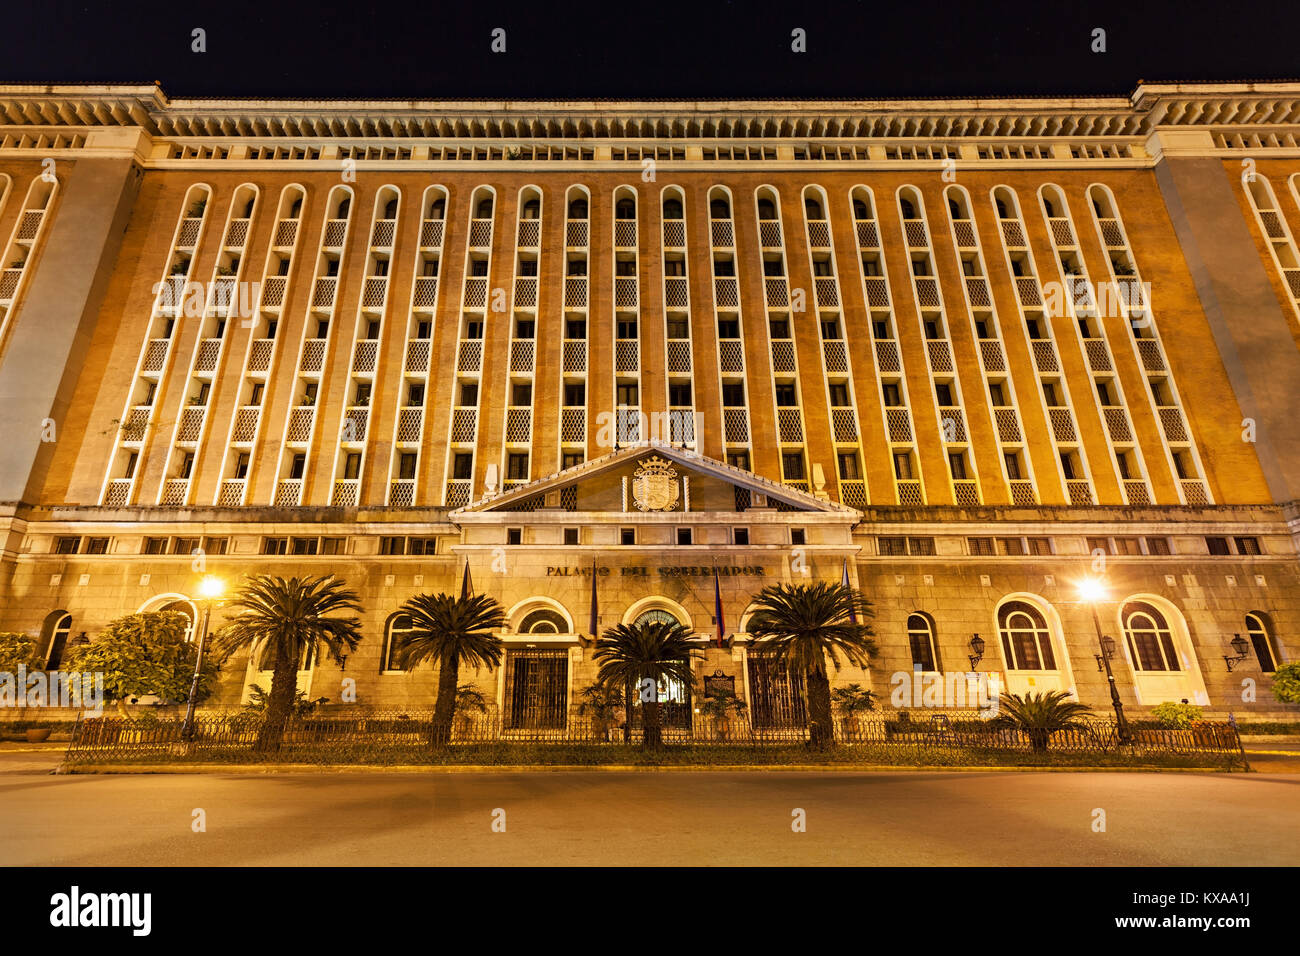 MANILA, Philippinen - MÄRZ 16: Palacio del Gobernador in Intramuros am März 16, 2013, Manila, Philippinen. Intramuros ist einer der beliebtesten Stockfoto